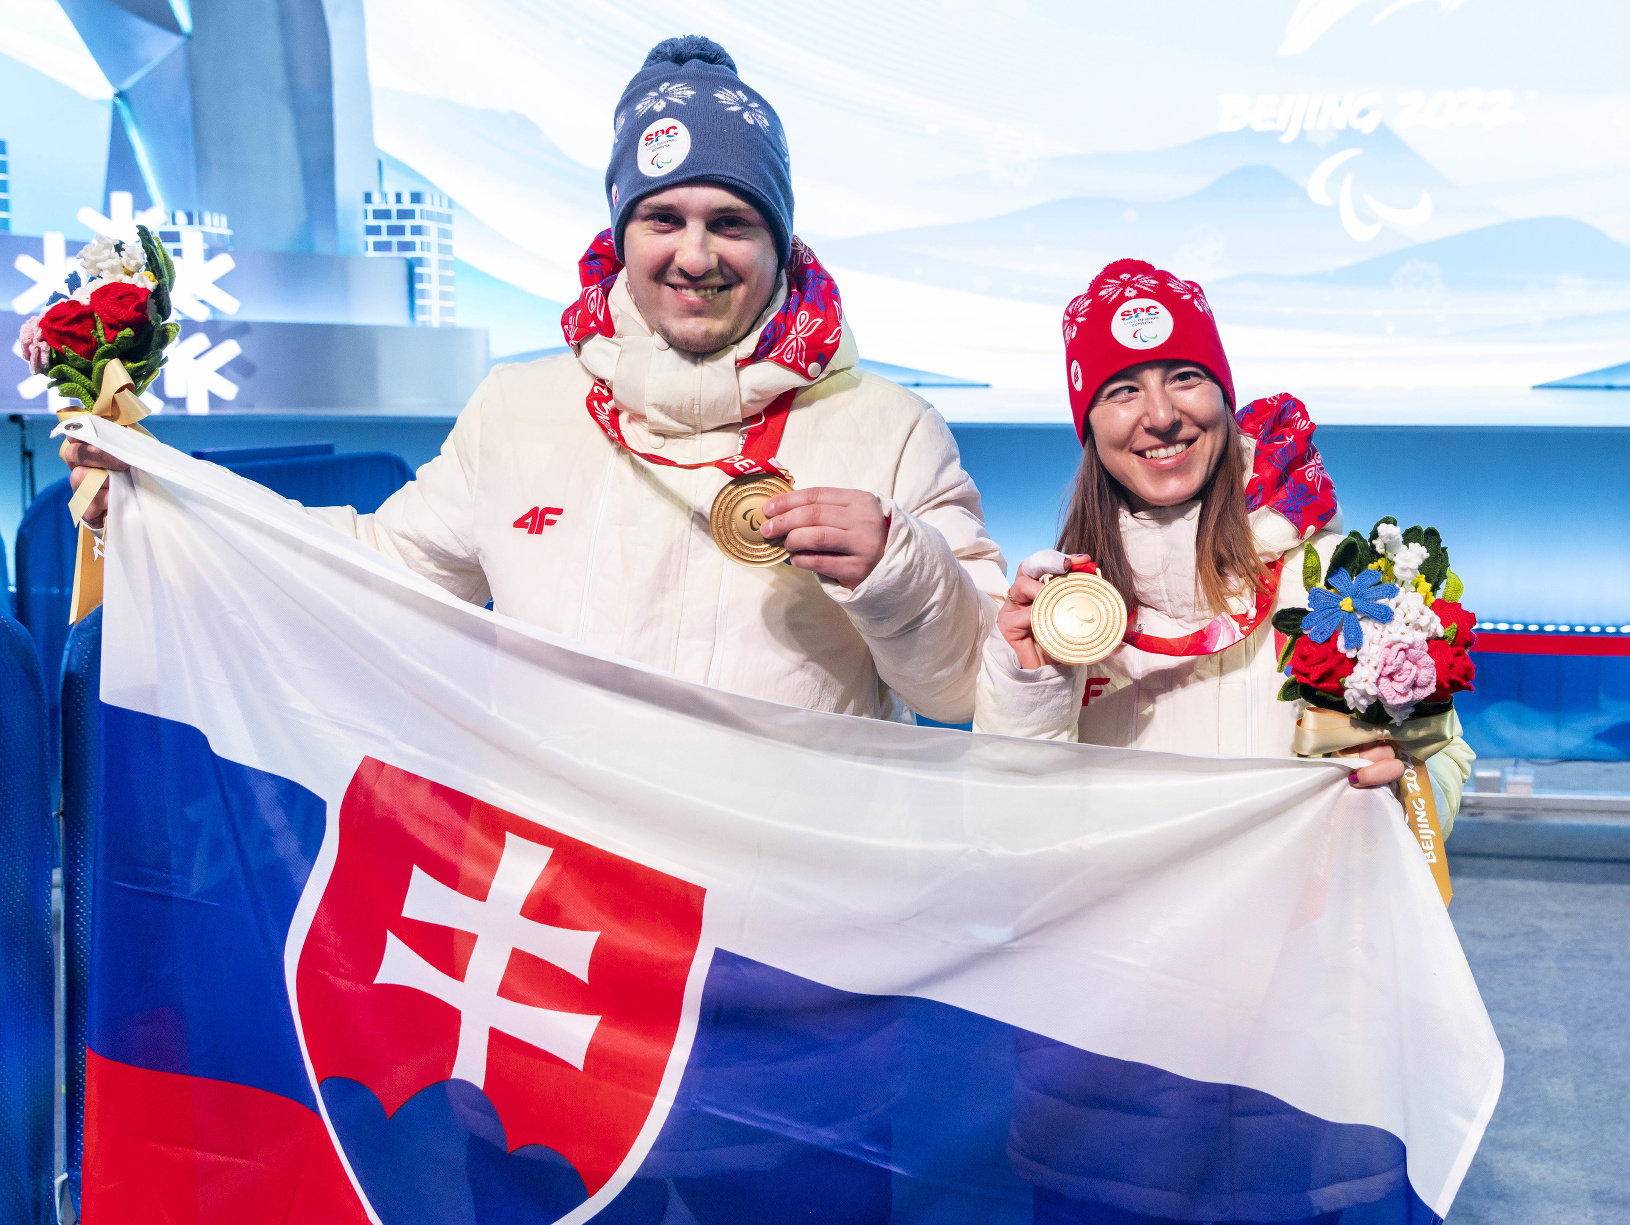 Sprava: Slovenská zjazdová lyžiarka